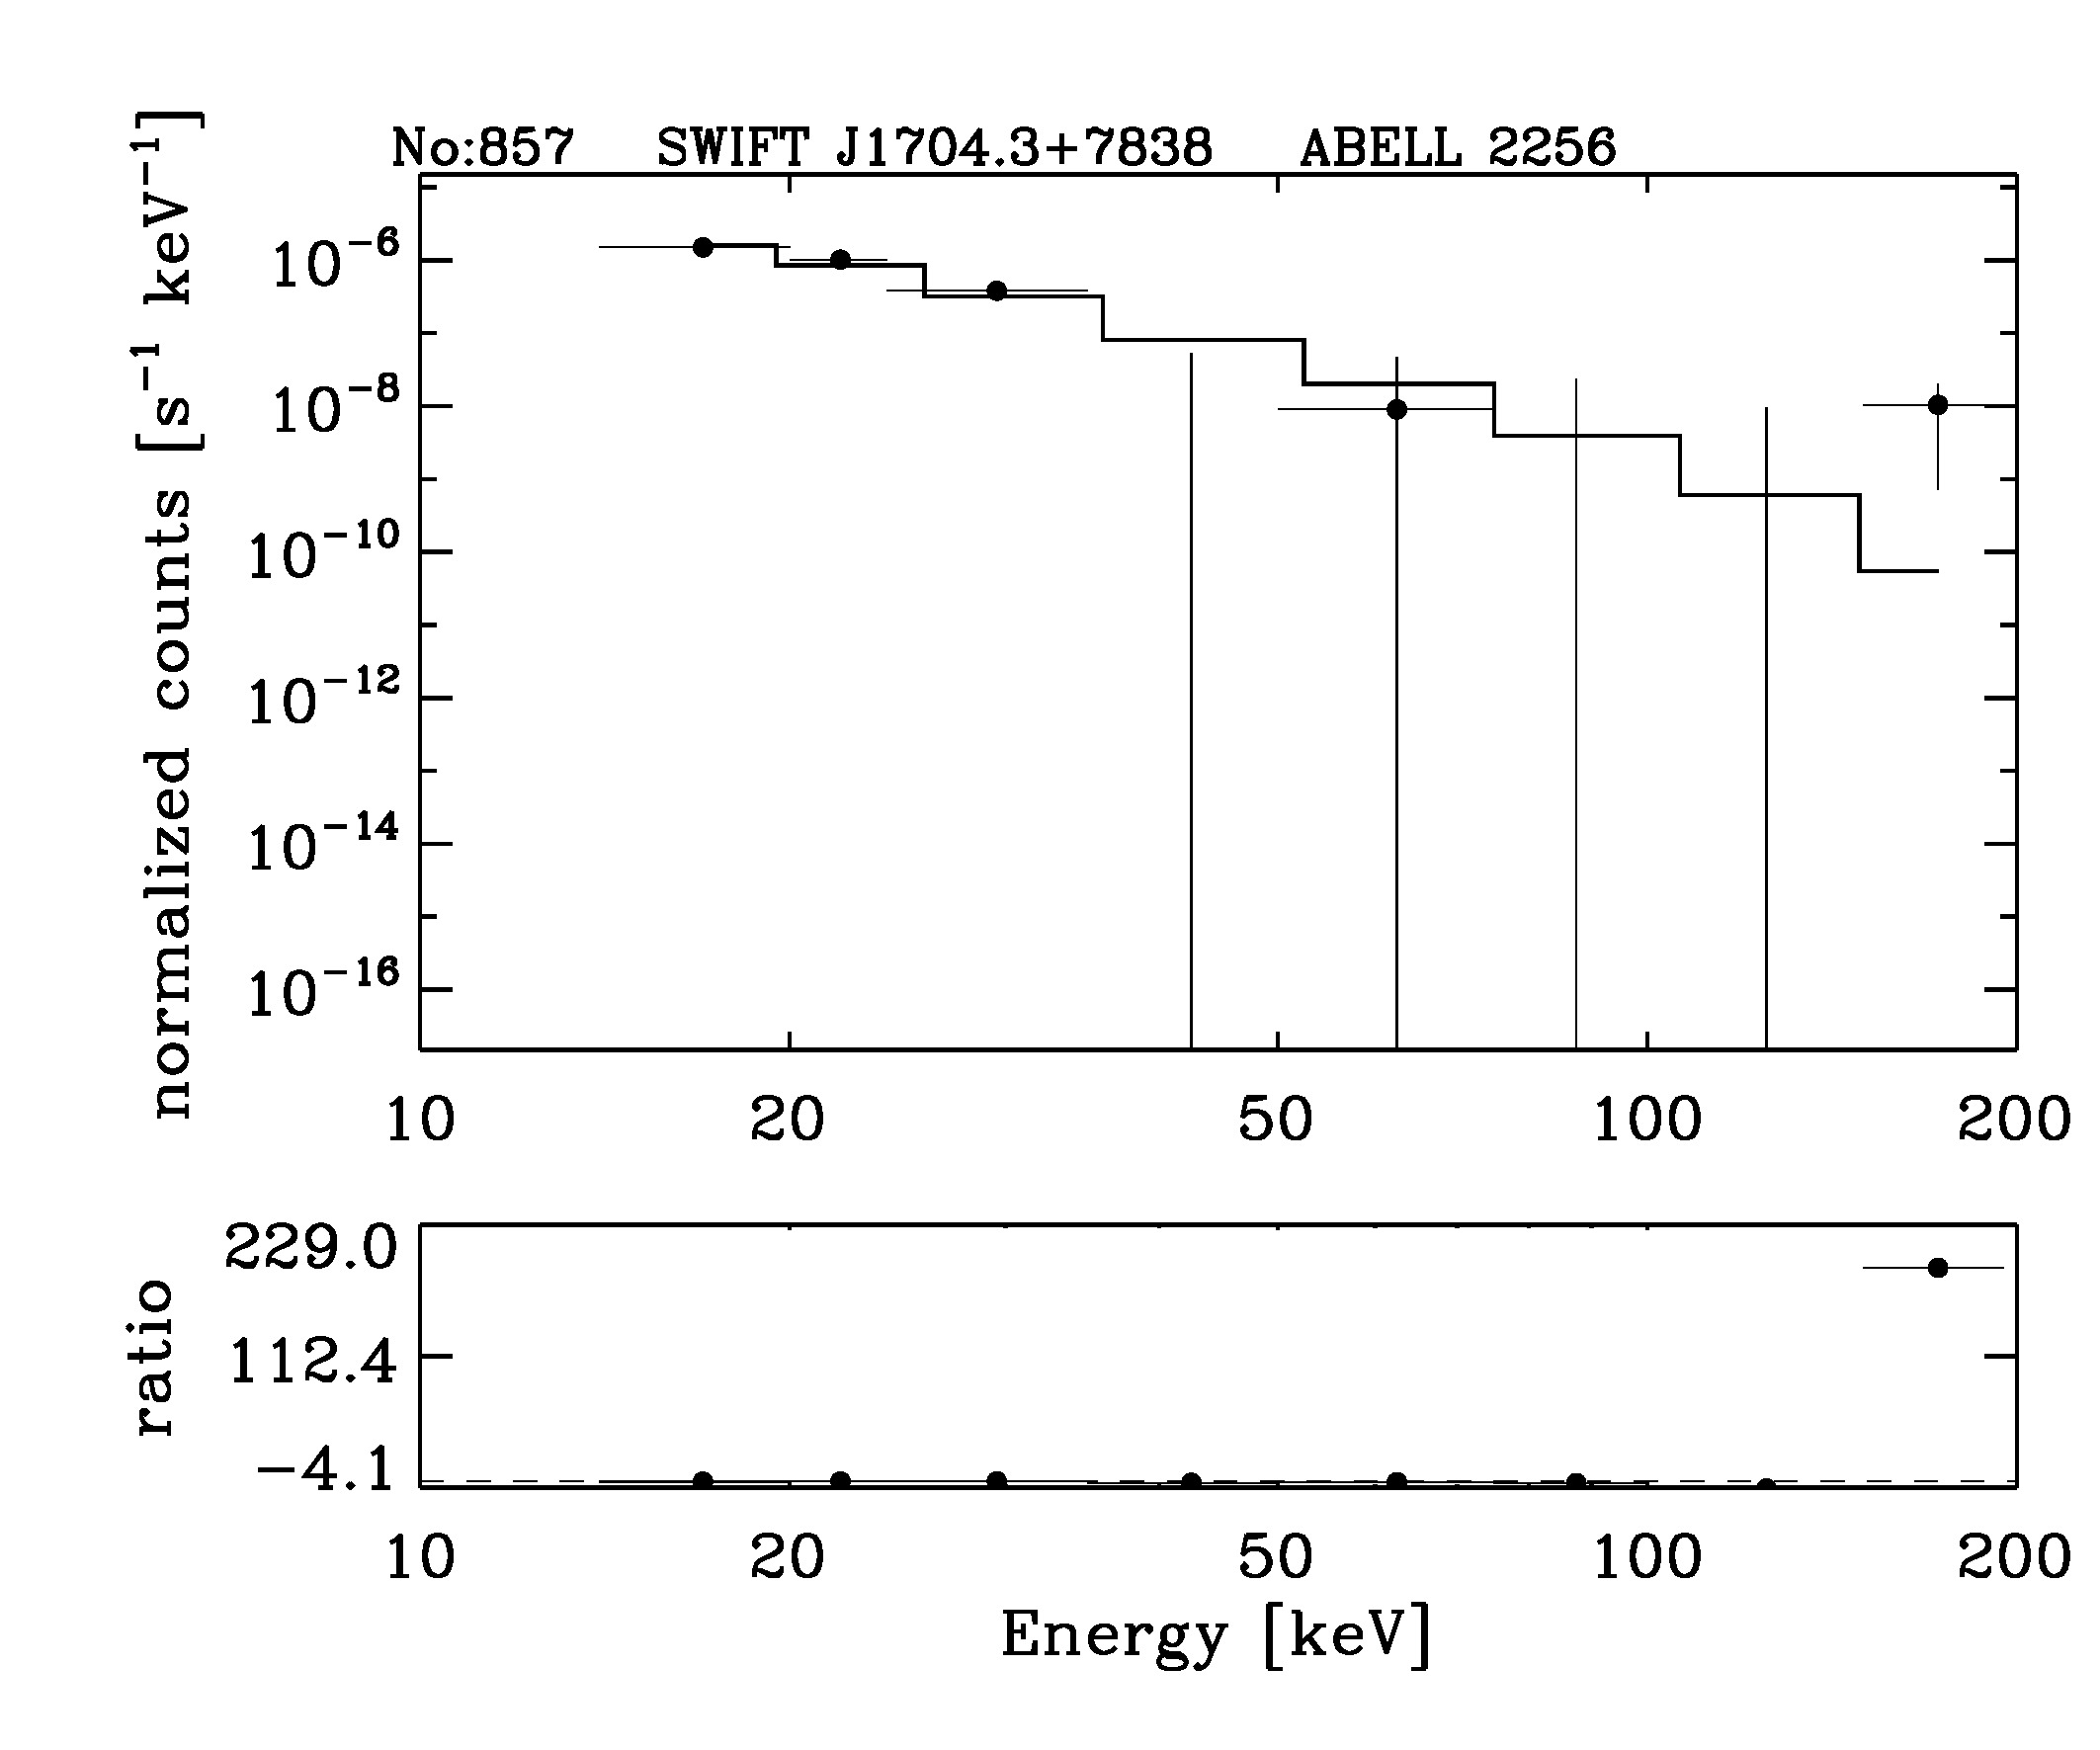 BAT Spectrum for SWIFT J1704.3+7838